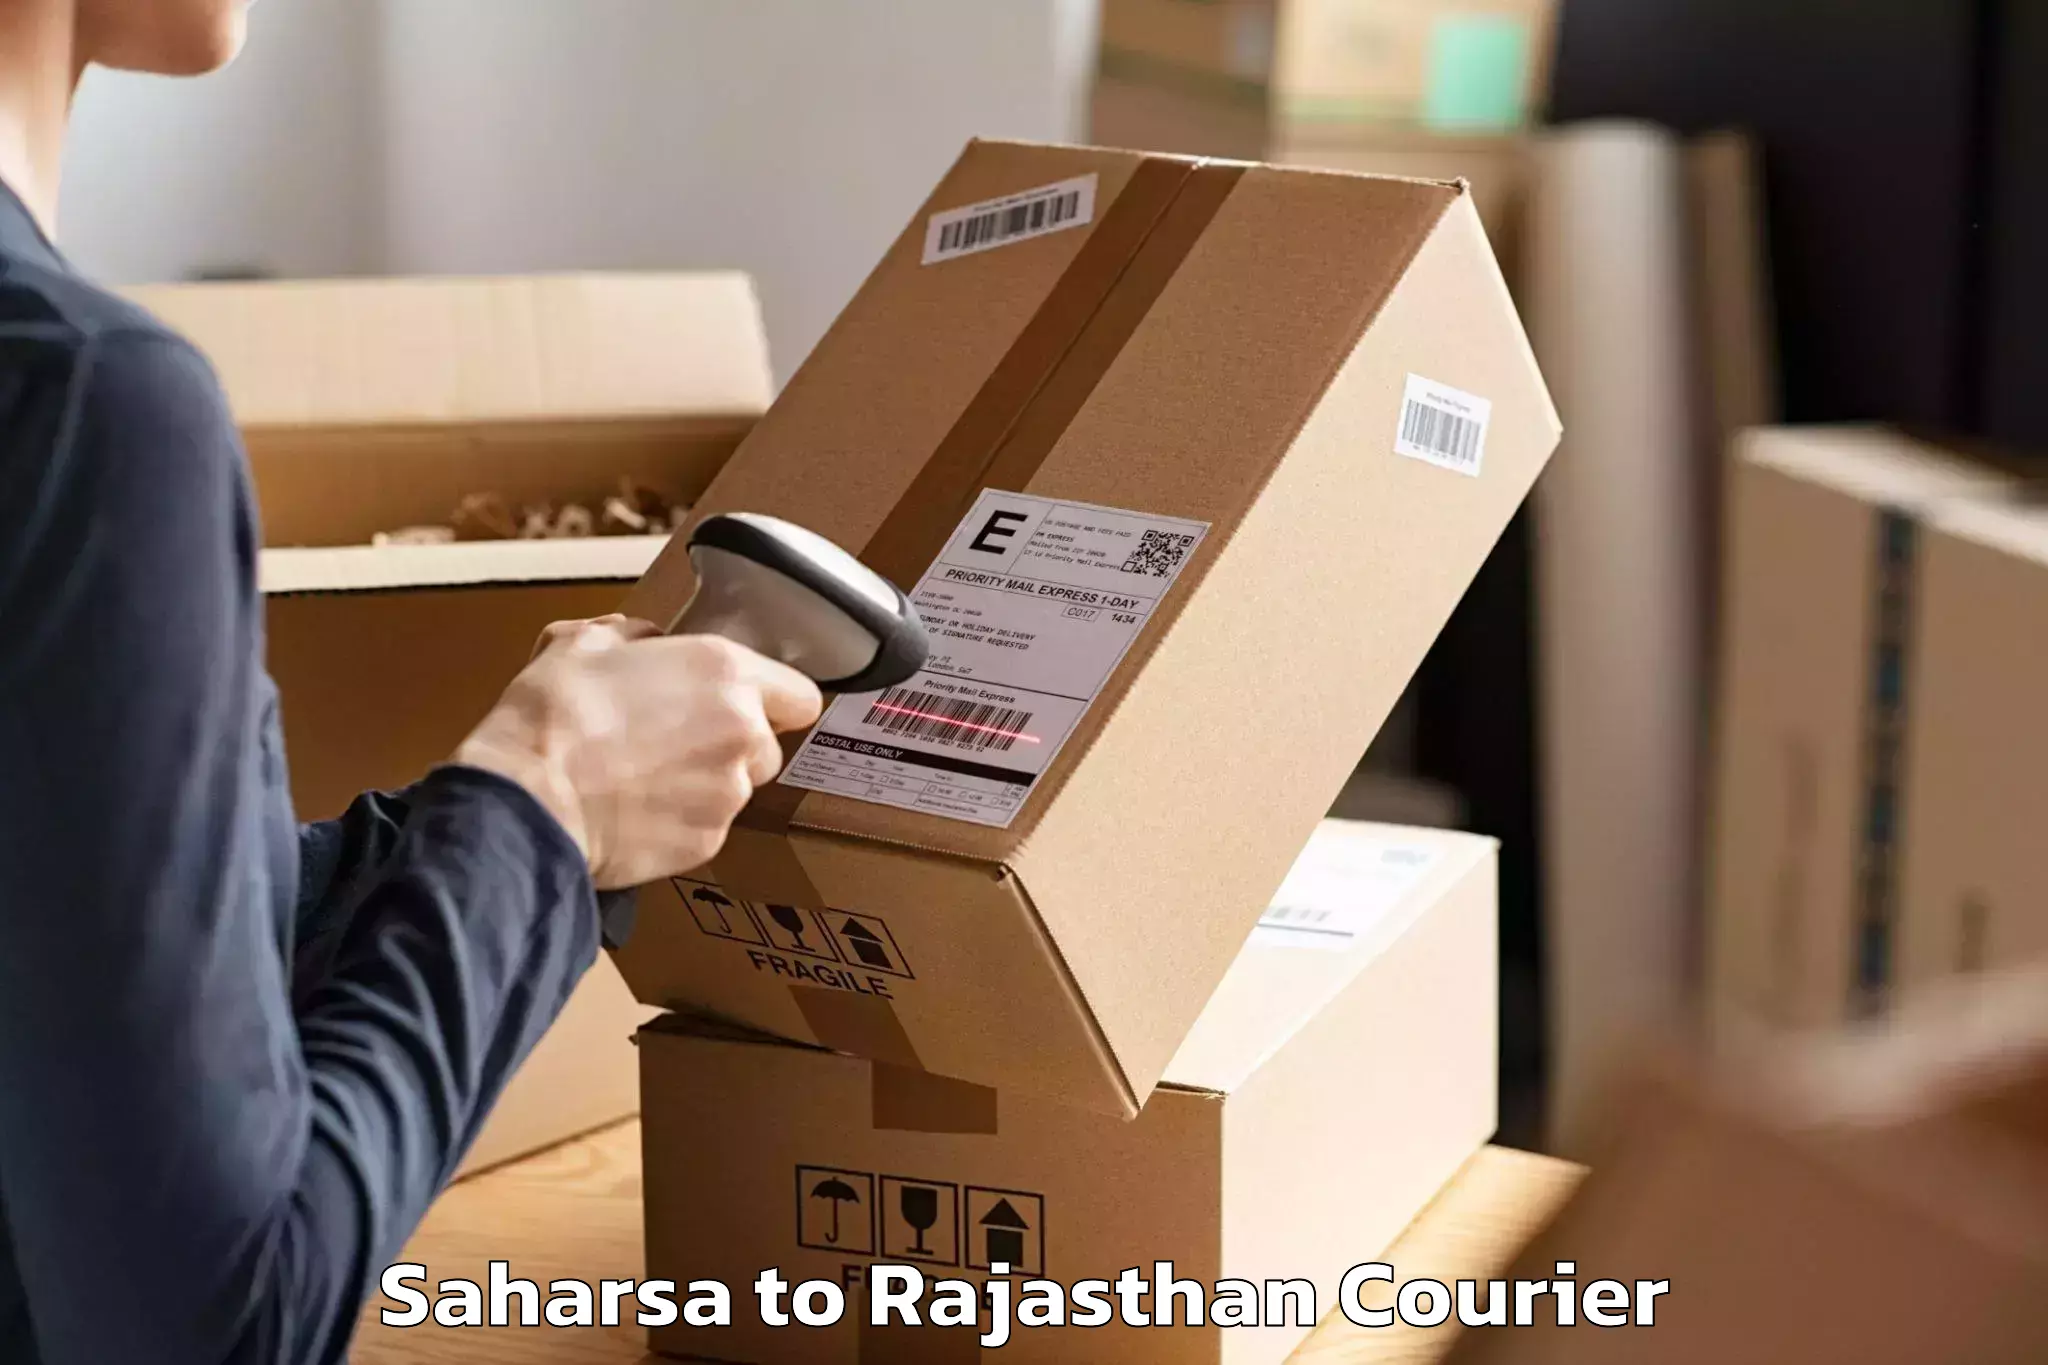 Furniture moving experts Saharsa to Jalore